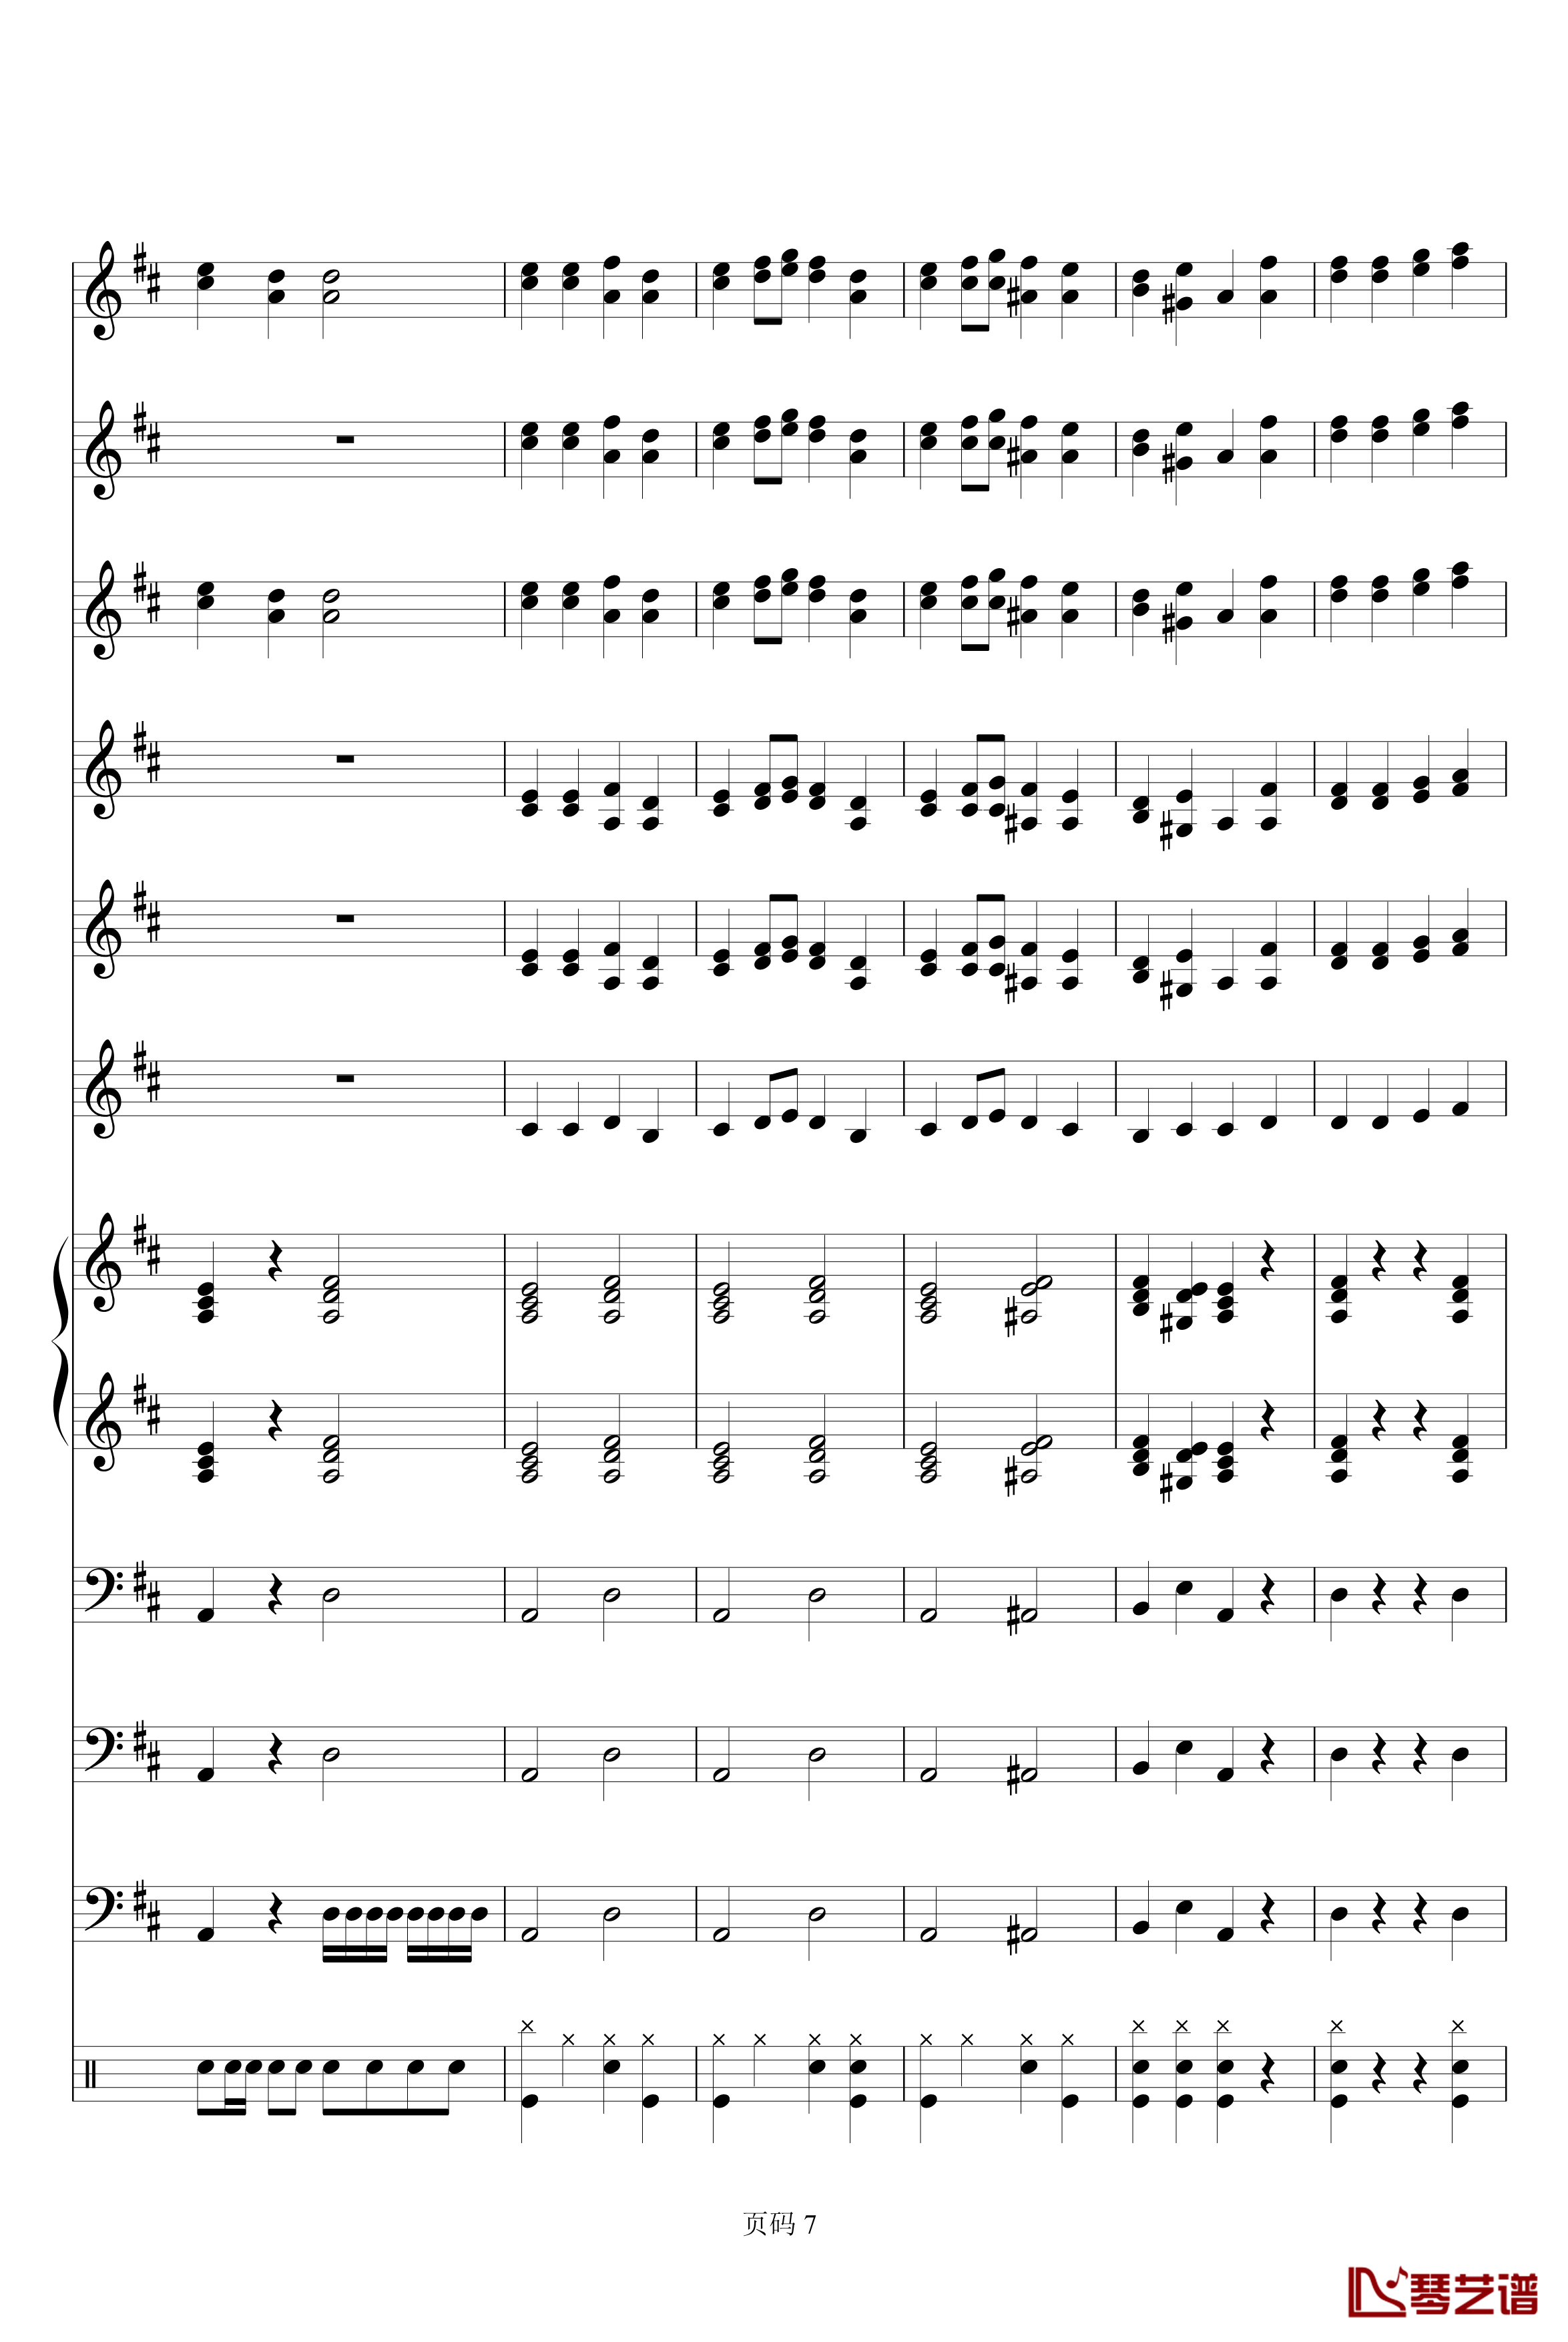 欢乐颂电子琴合奏钢琴谱-贝多芬-beethoven7